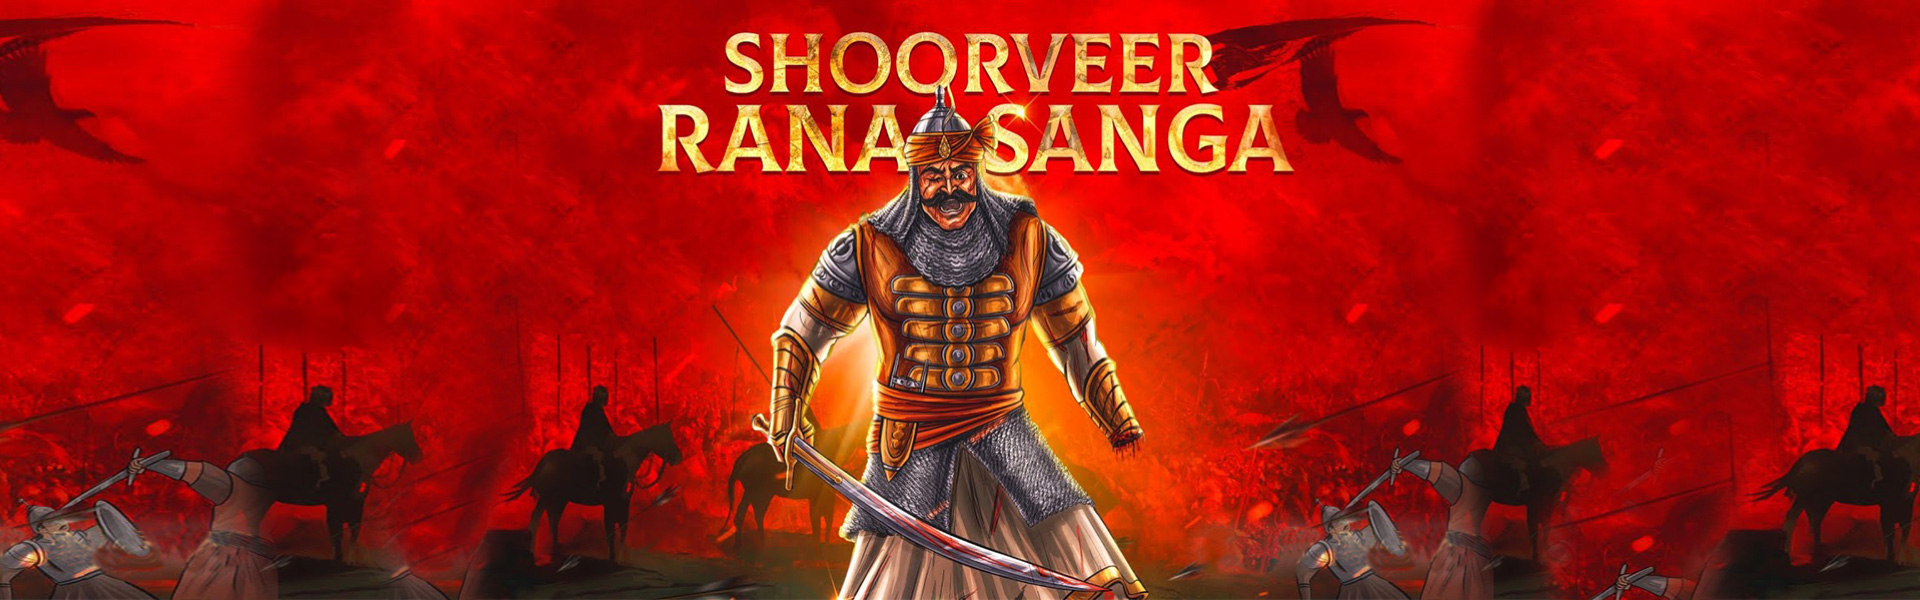 Shoorveer Rana Sanga